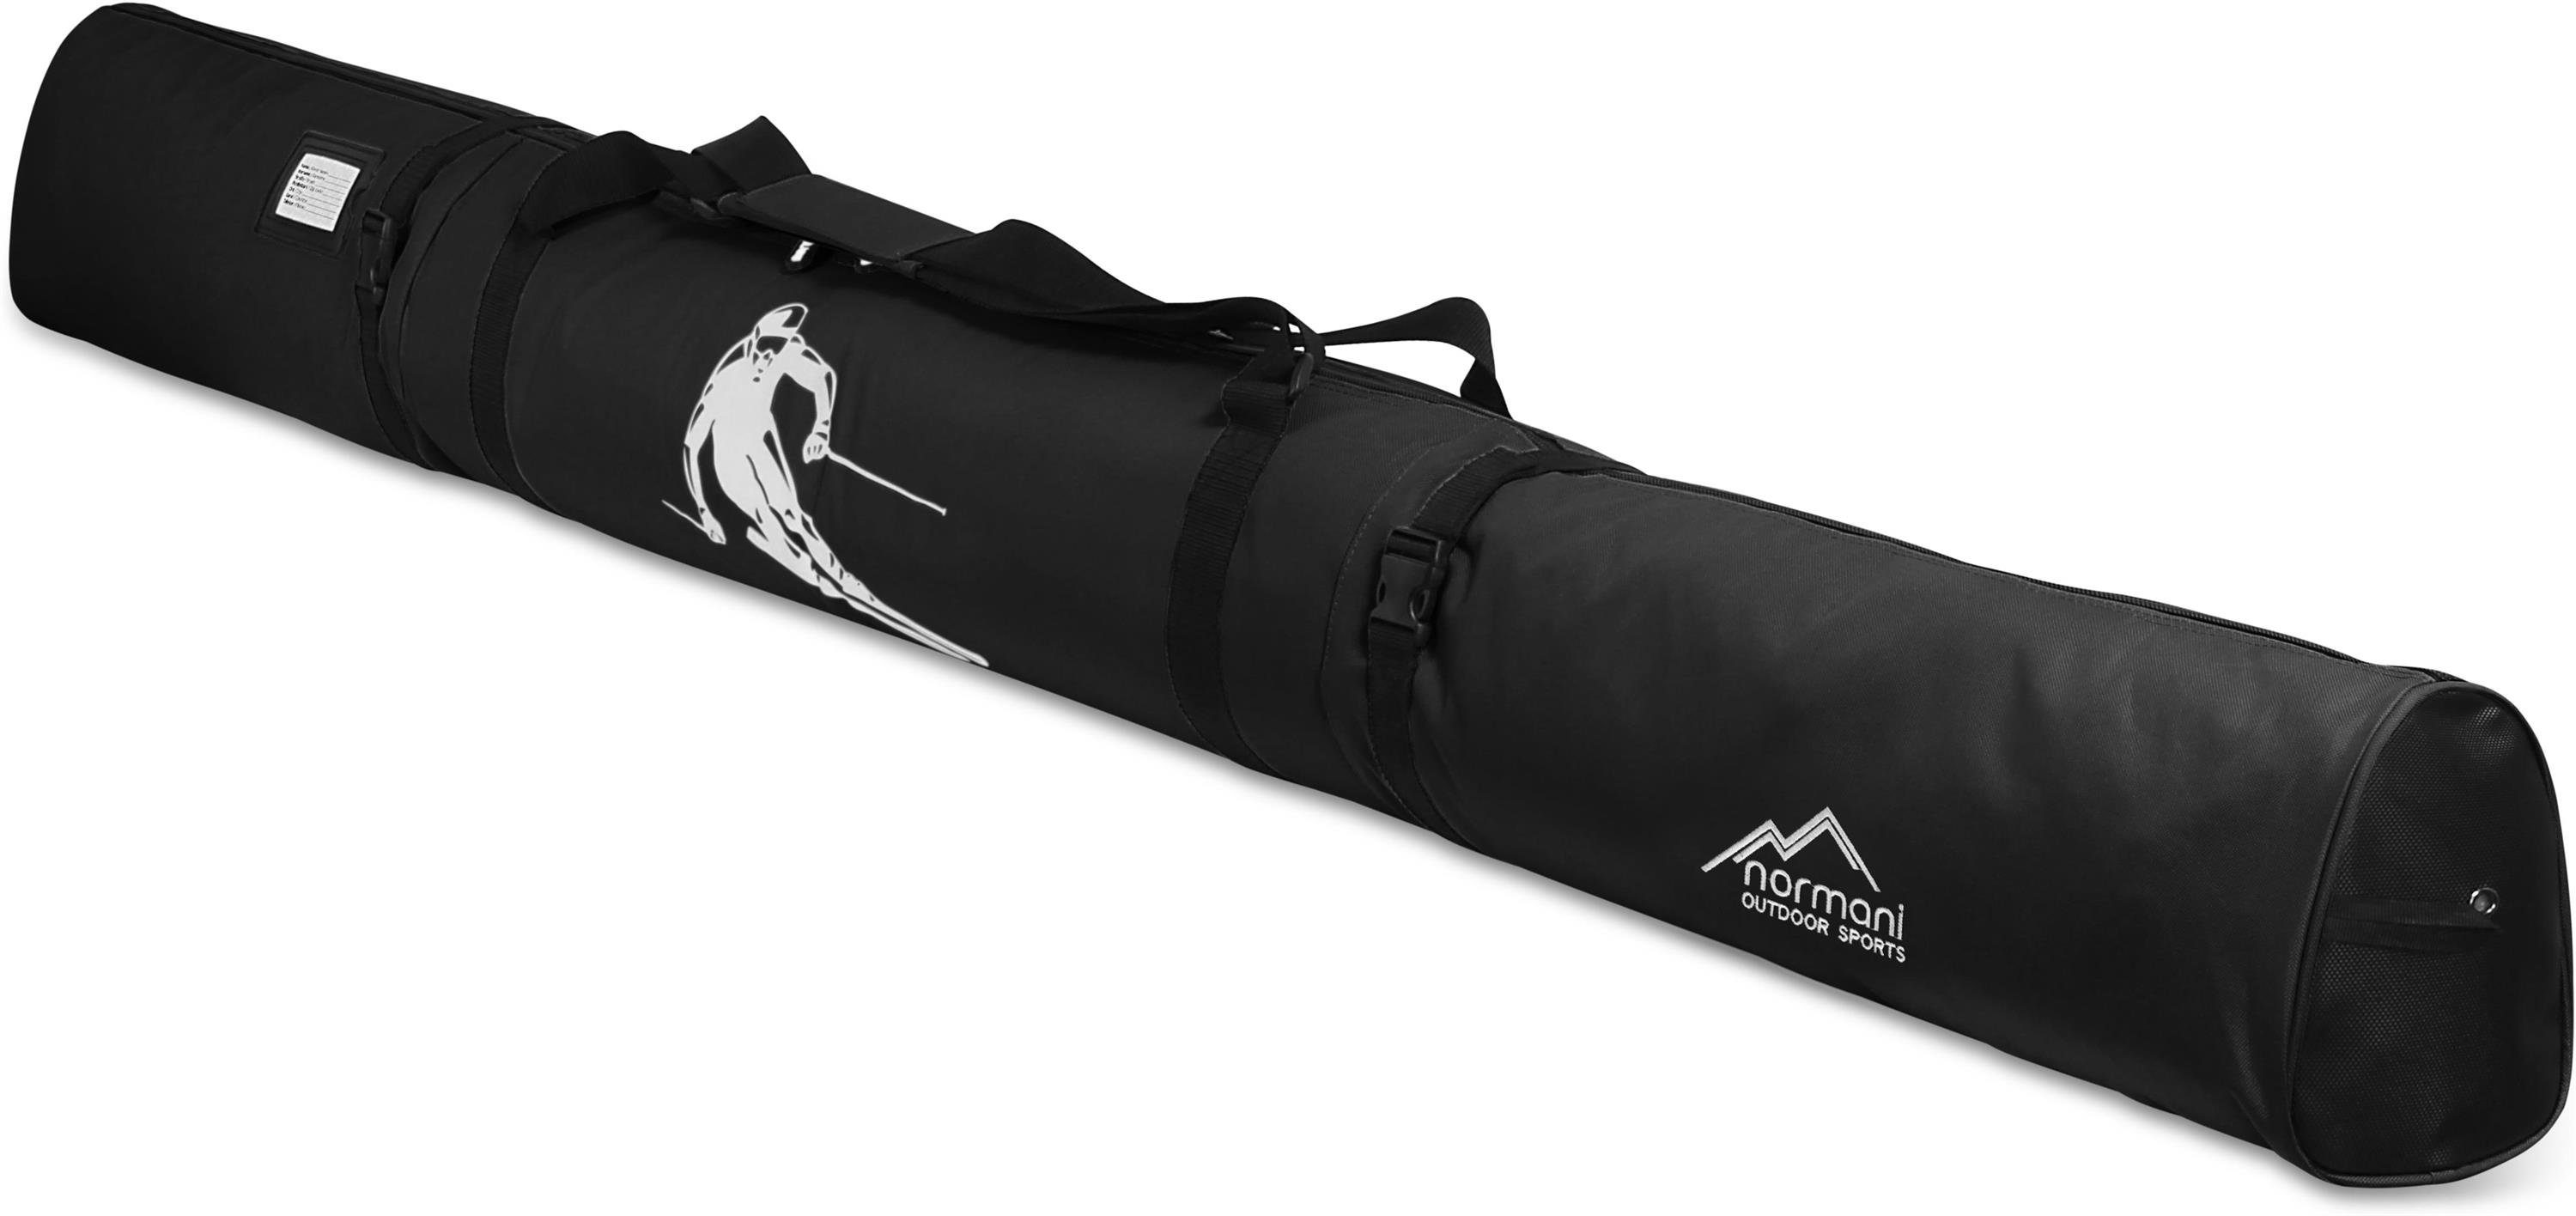 Skitasche Skistöcke Skisack Run für Skier Schwarz 200, Skitasche Sporttasche und Transporttasche Alpine normani - Aufbewahrungstasche